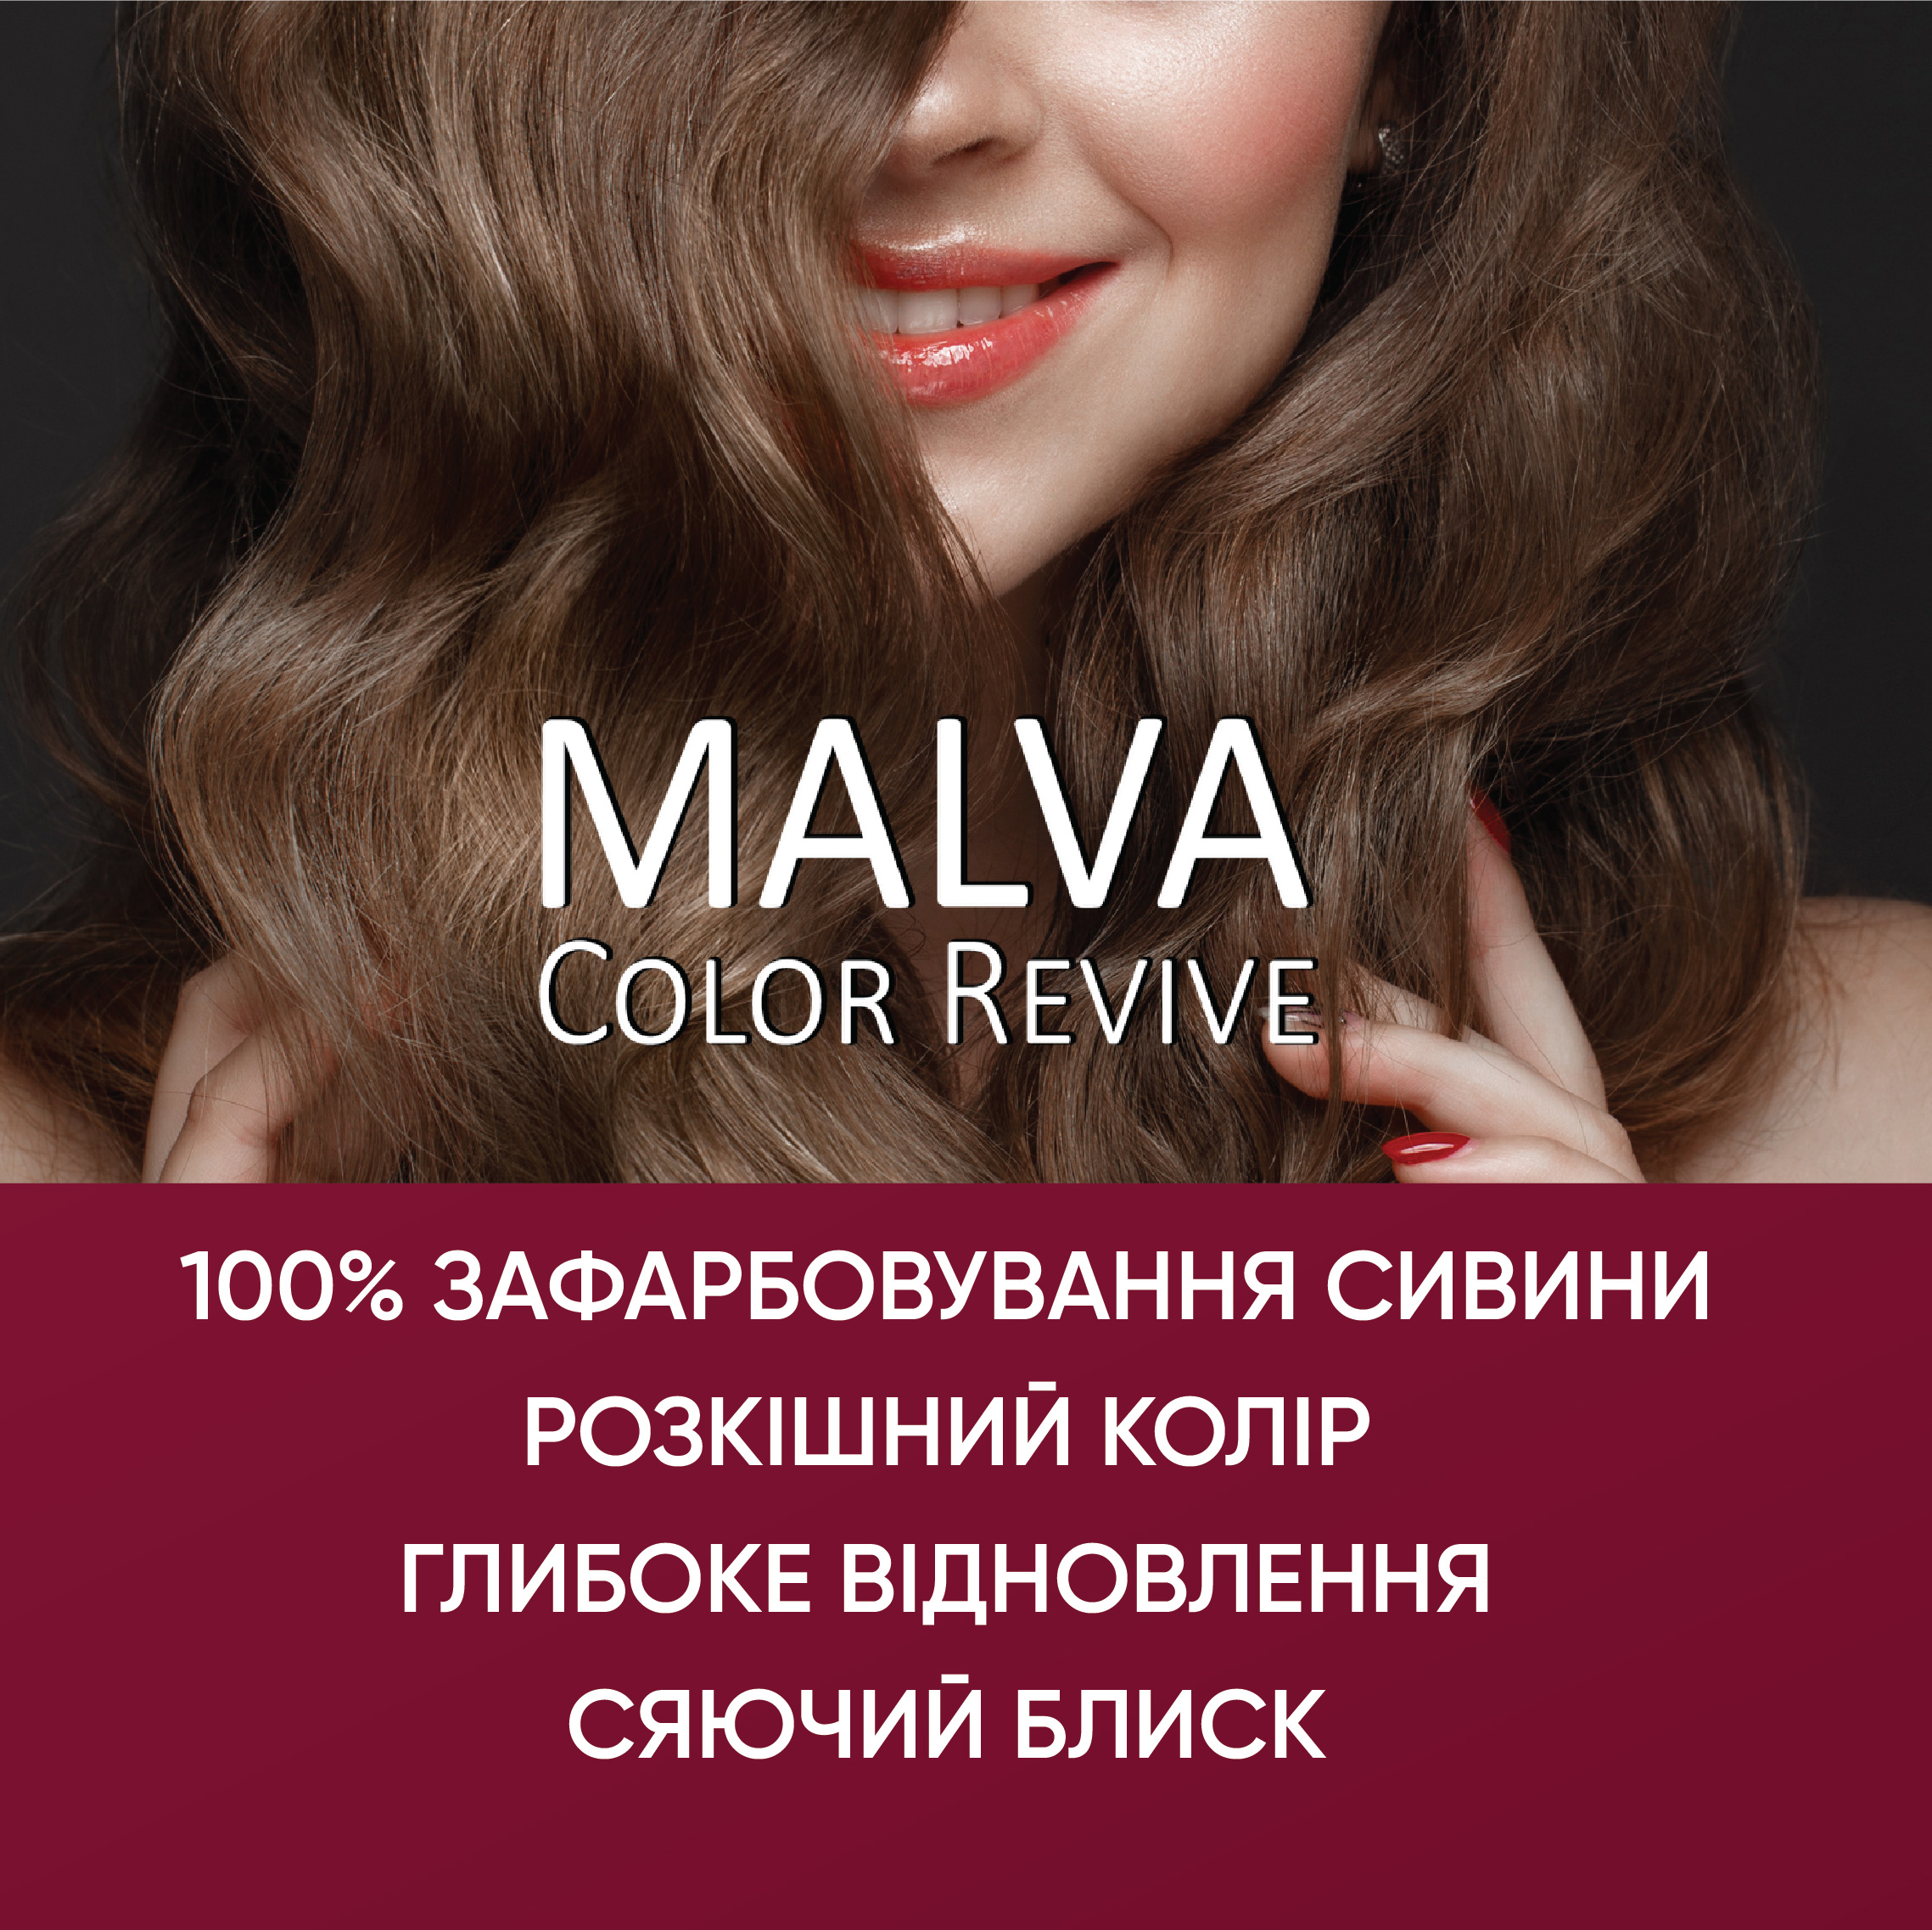 Устойчивая крем-краска для волос Malva Color Revive оттенок 141 Шоколад - фото 4